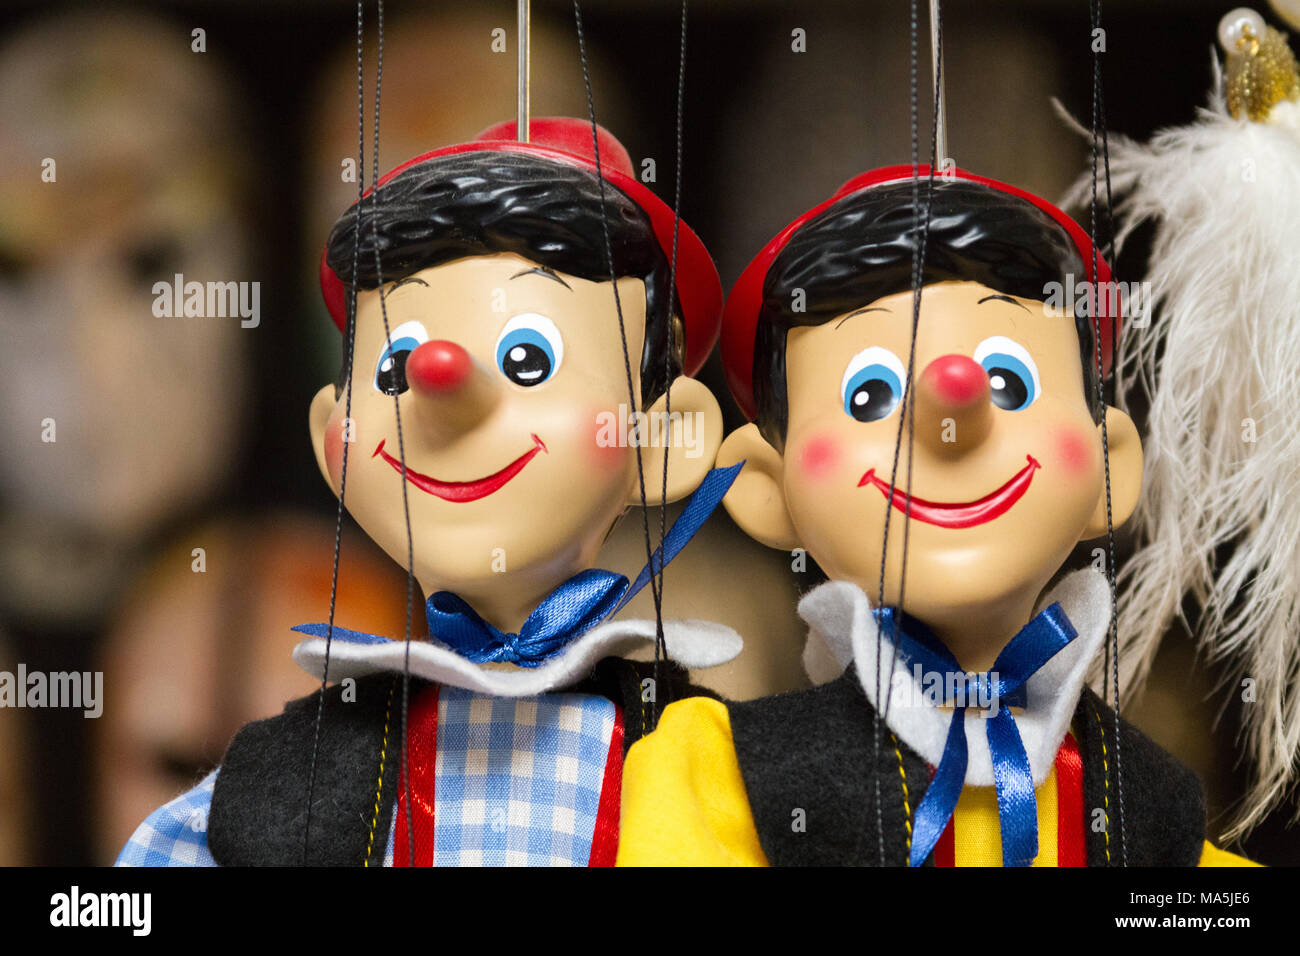 Venezia (Venedig), Italien. 2. Februar 2018. Pinocchio Marionette auf Strings in einem Laden. Stockfoto